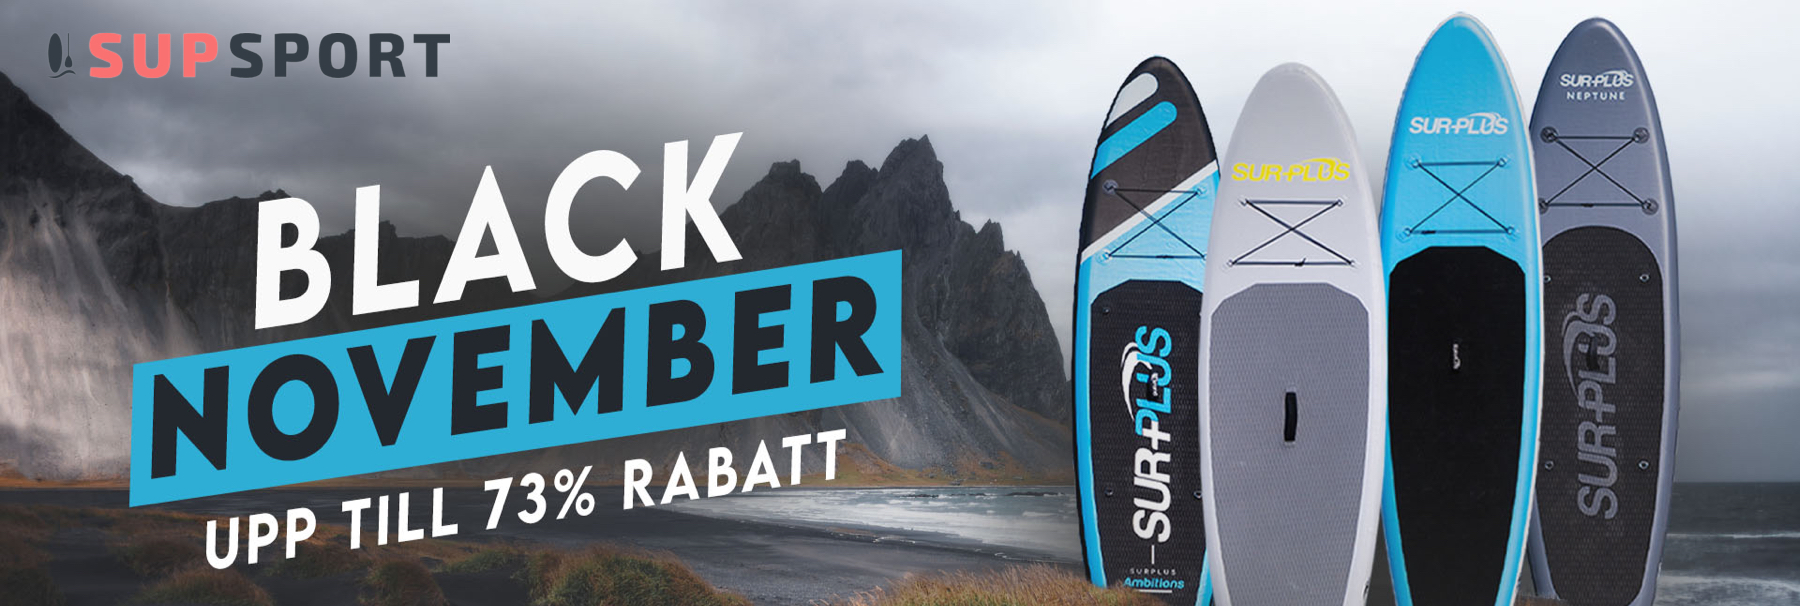 Black November hos SUPsport med upp till 73% rabatt!